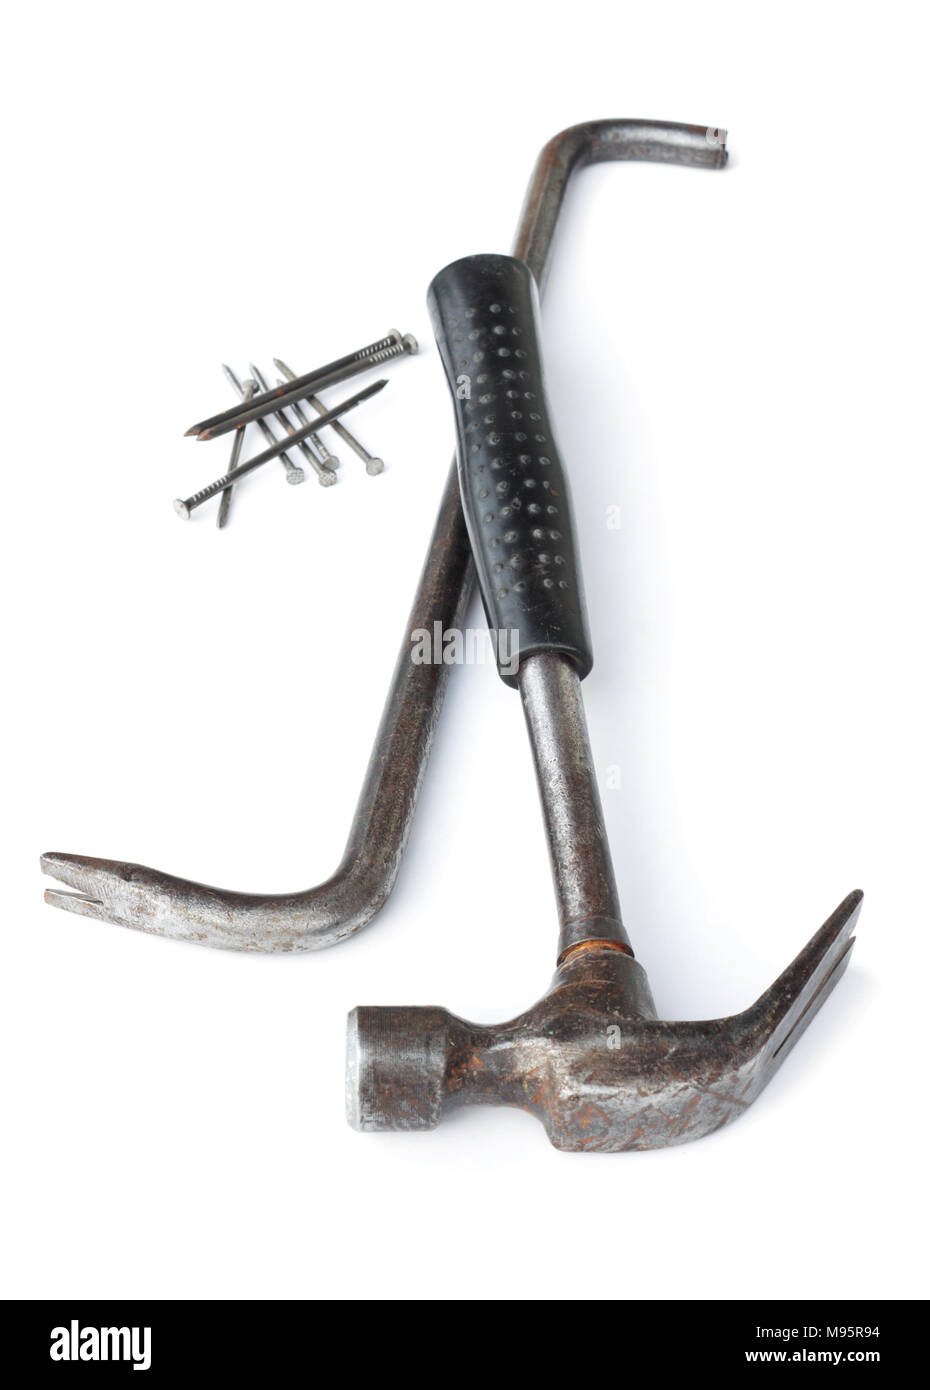 Die alten Hammer und Nagelzieher auf Weiß Stockfotografie - Alamy